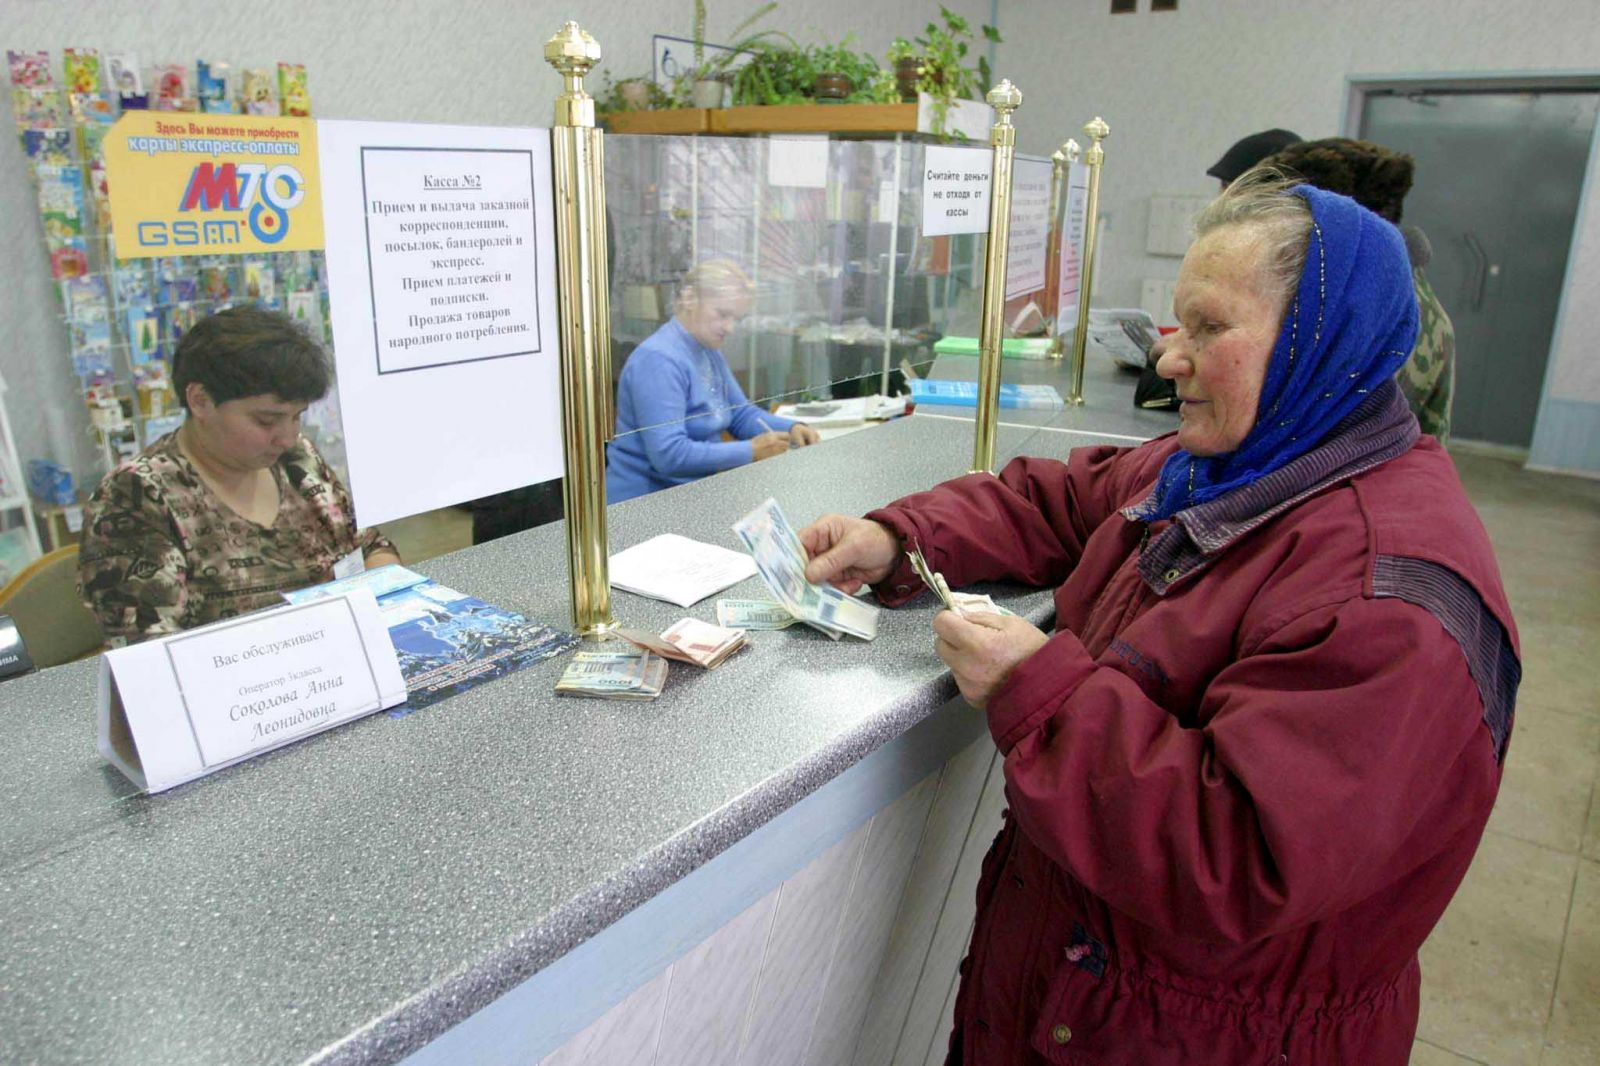 Kdaj se bo pokojnina povečala.  Upokojitvena starost v Rusiji.